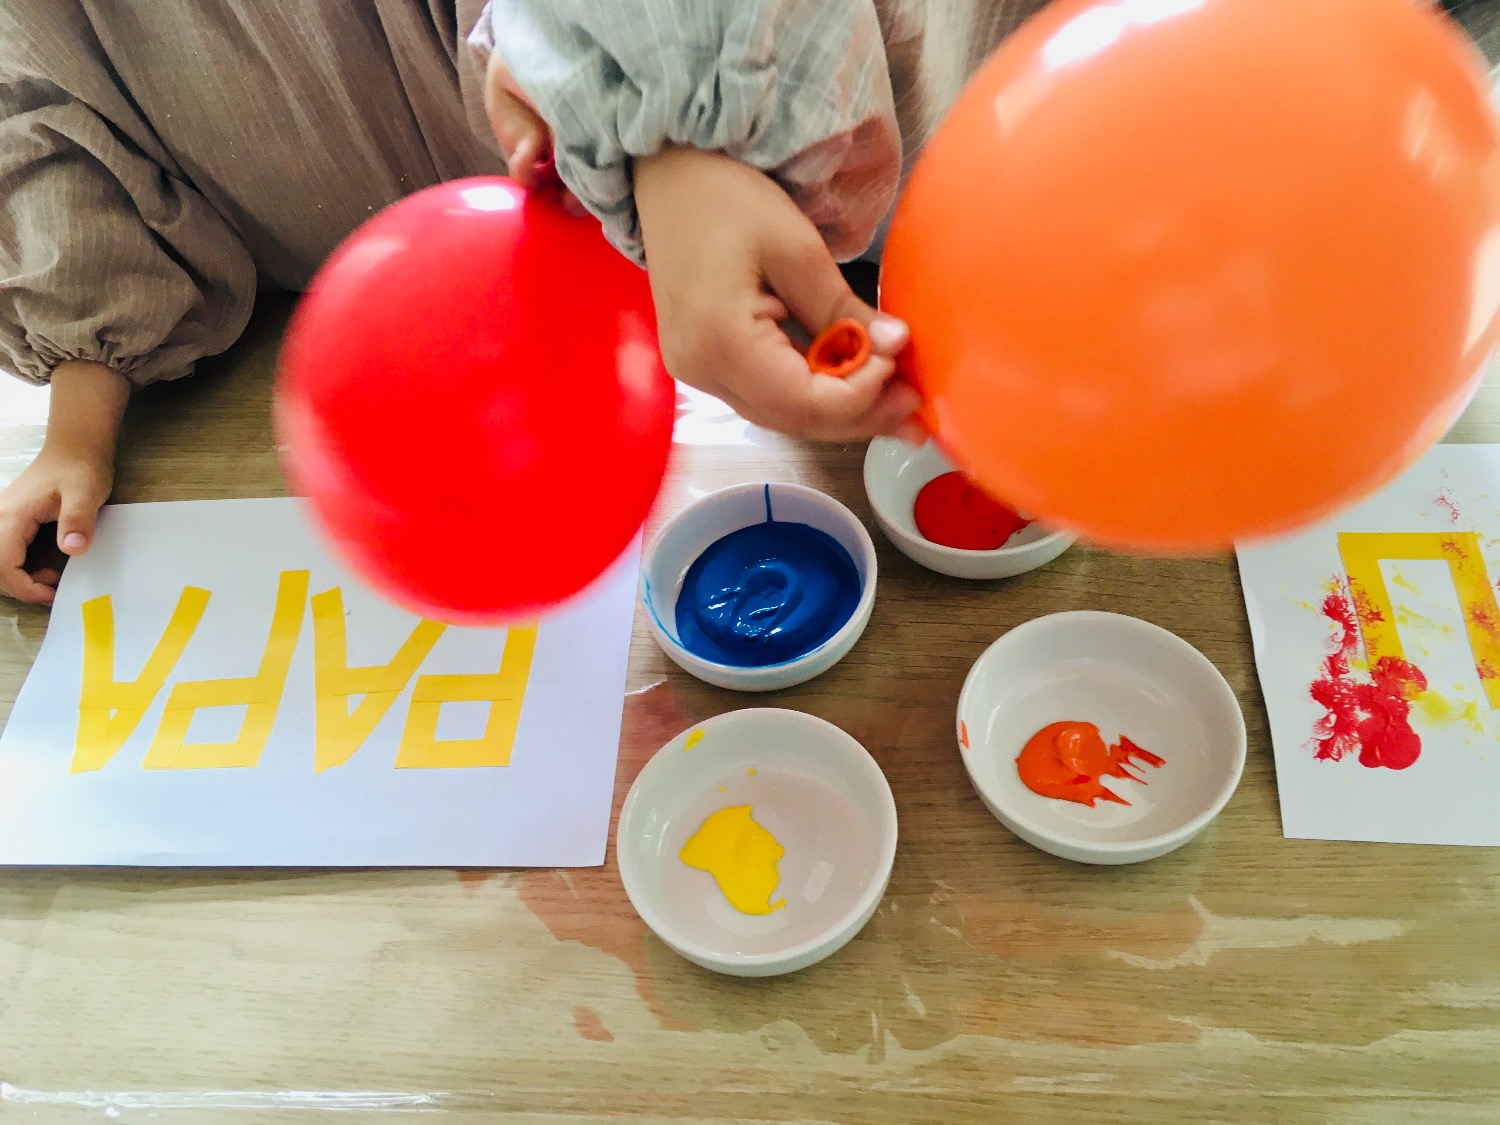 Titelbild zur Idee für die Beschäftigung mit Kindern '(228) Tape-Art mit Luftballons'